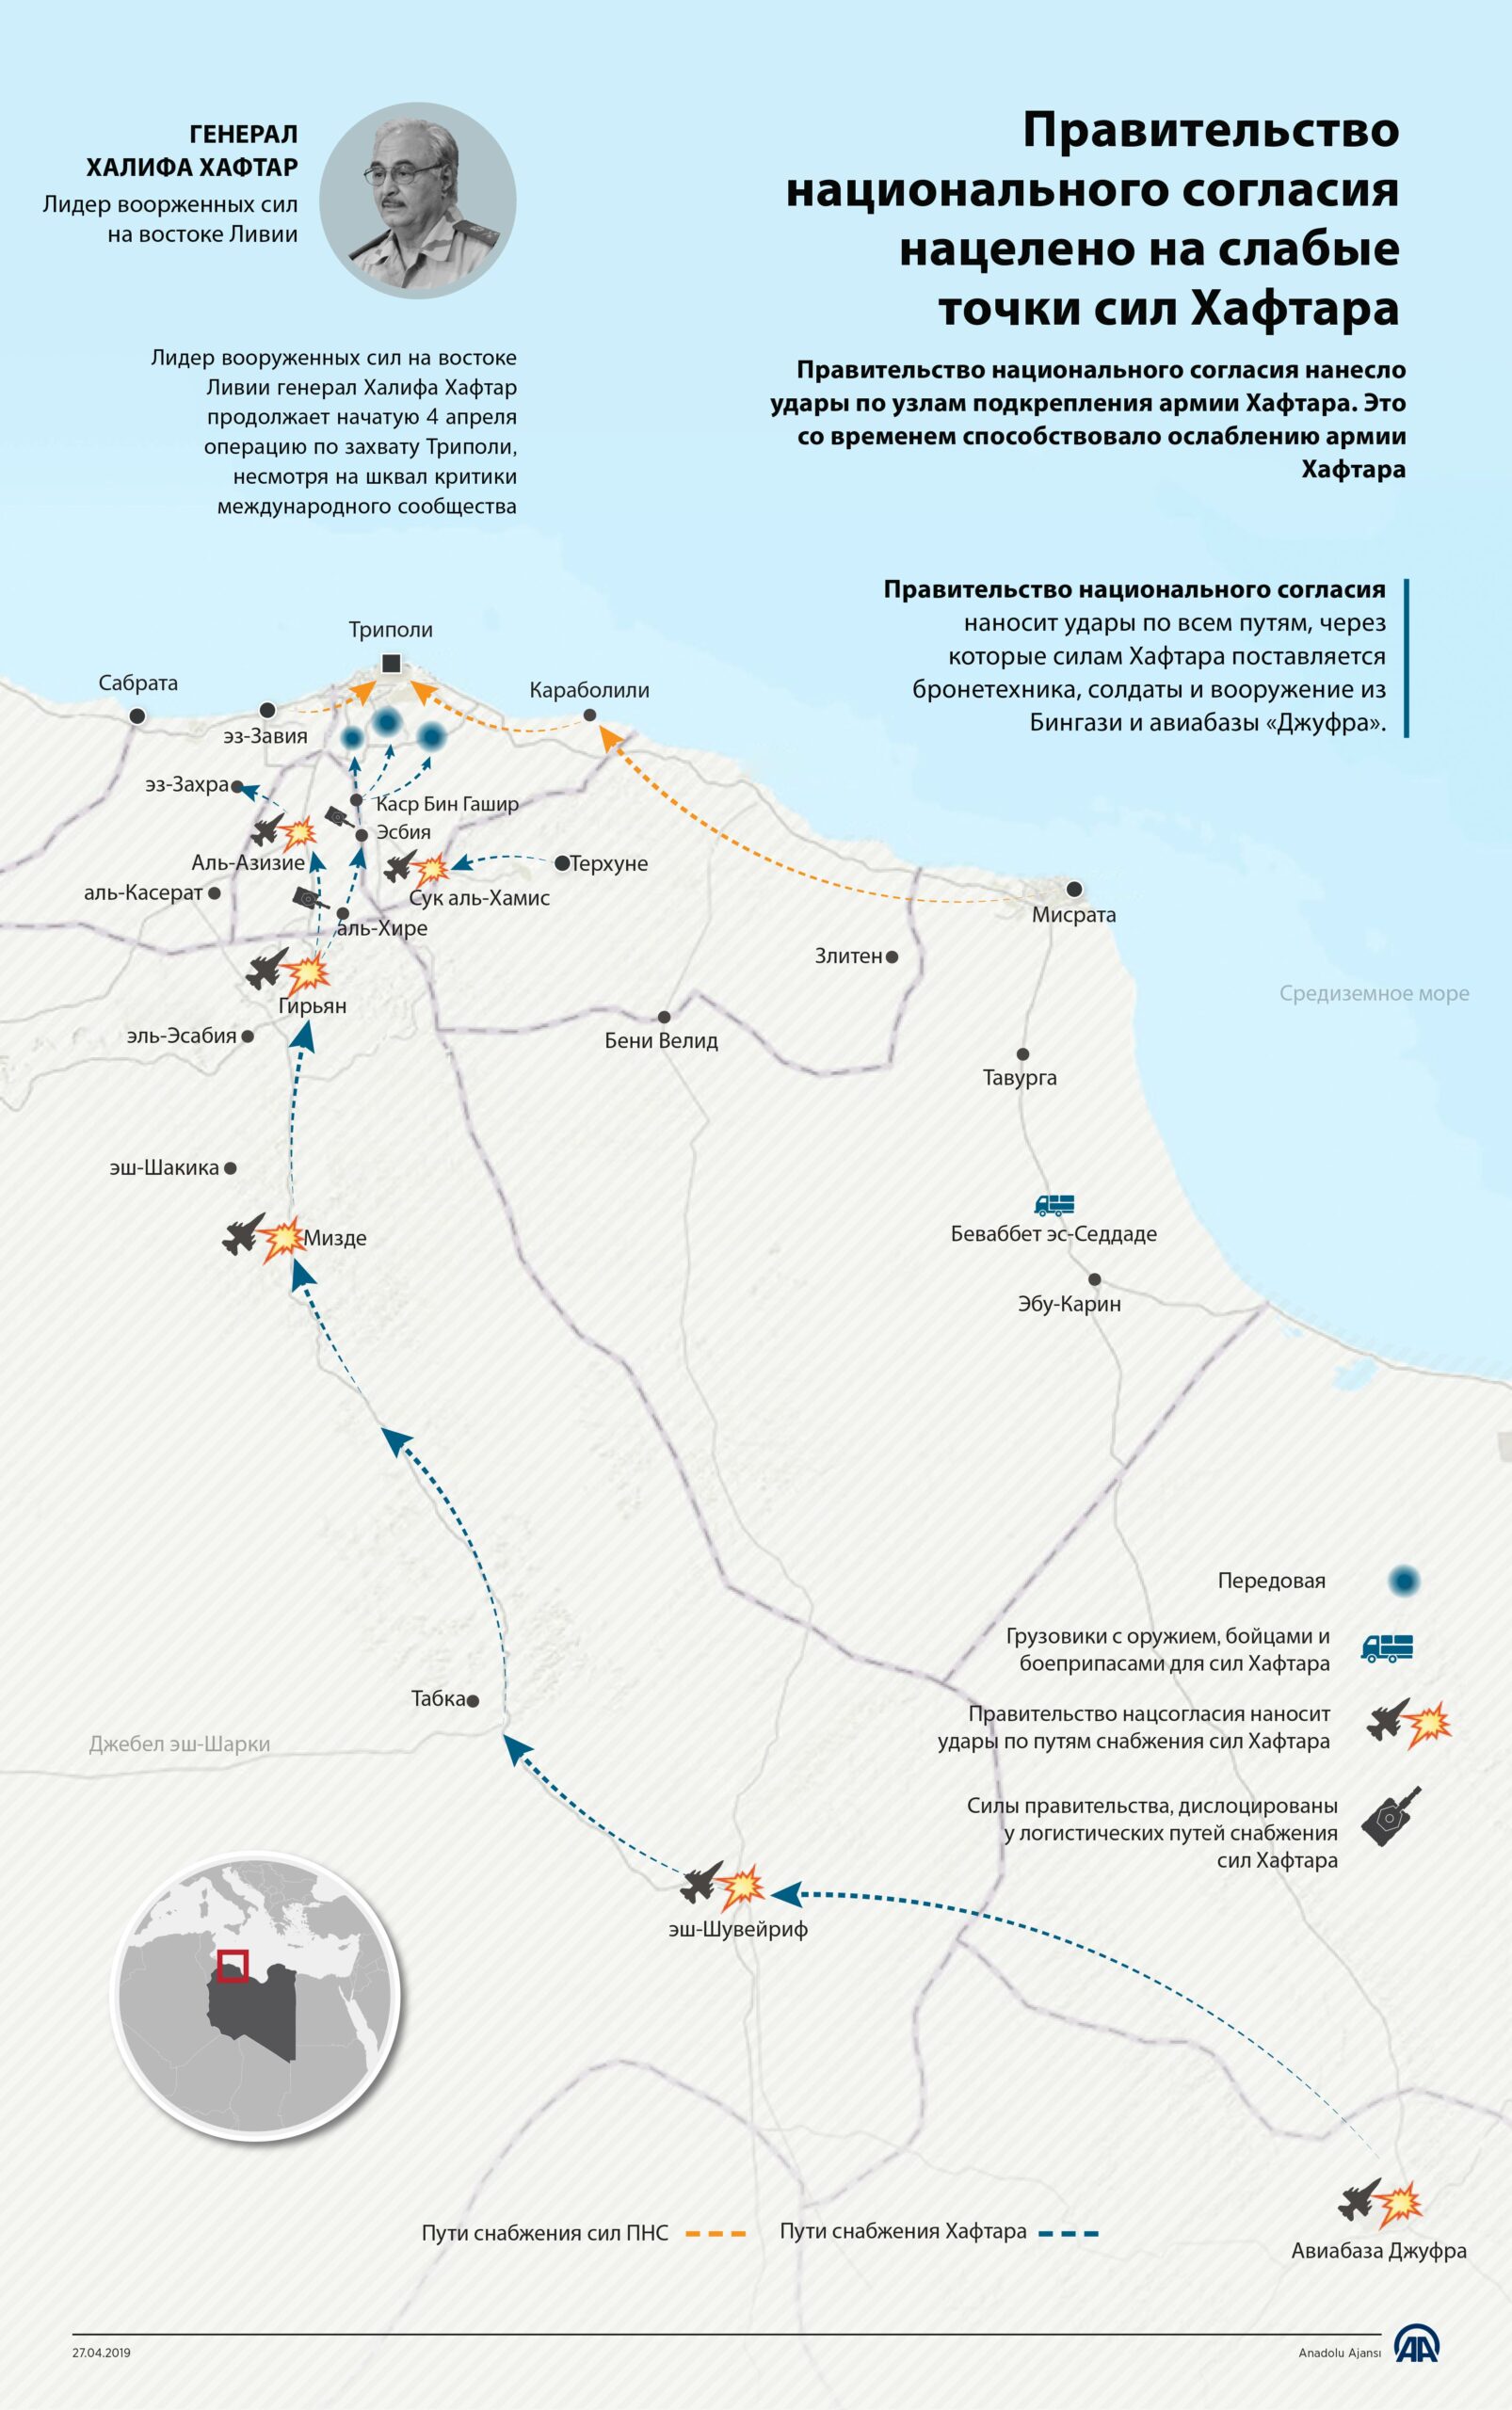 Защитники Триполи наносят удары по логистической сети армии Хафтара